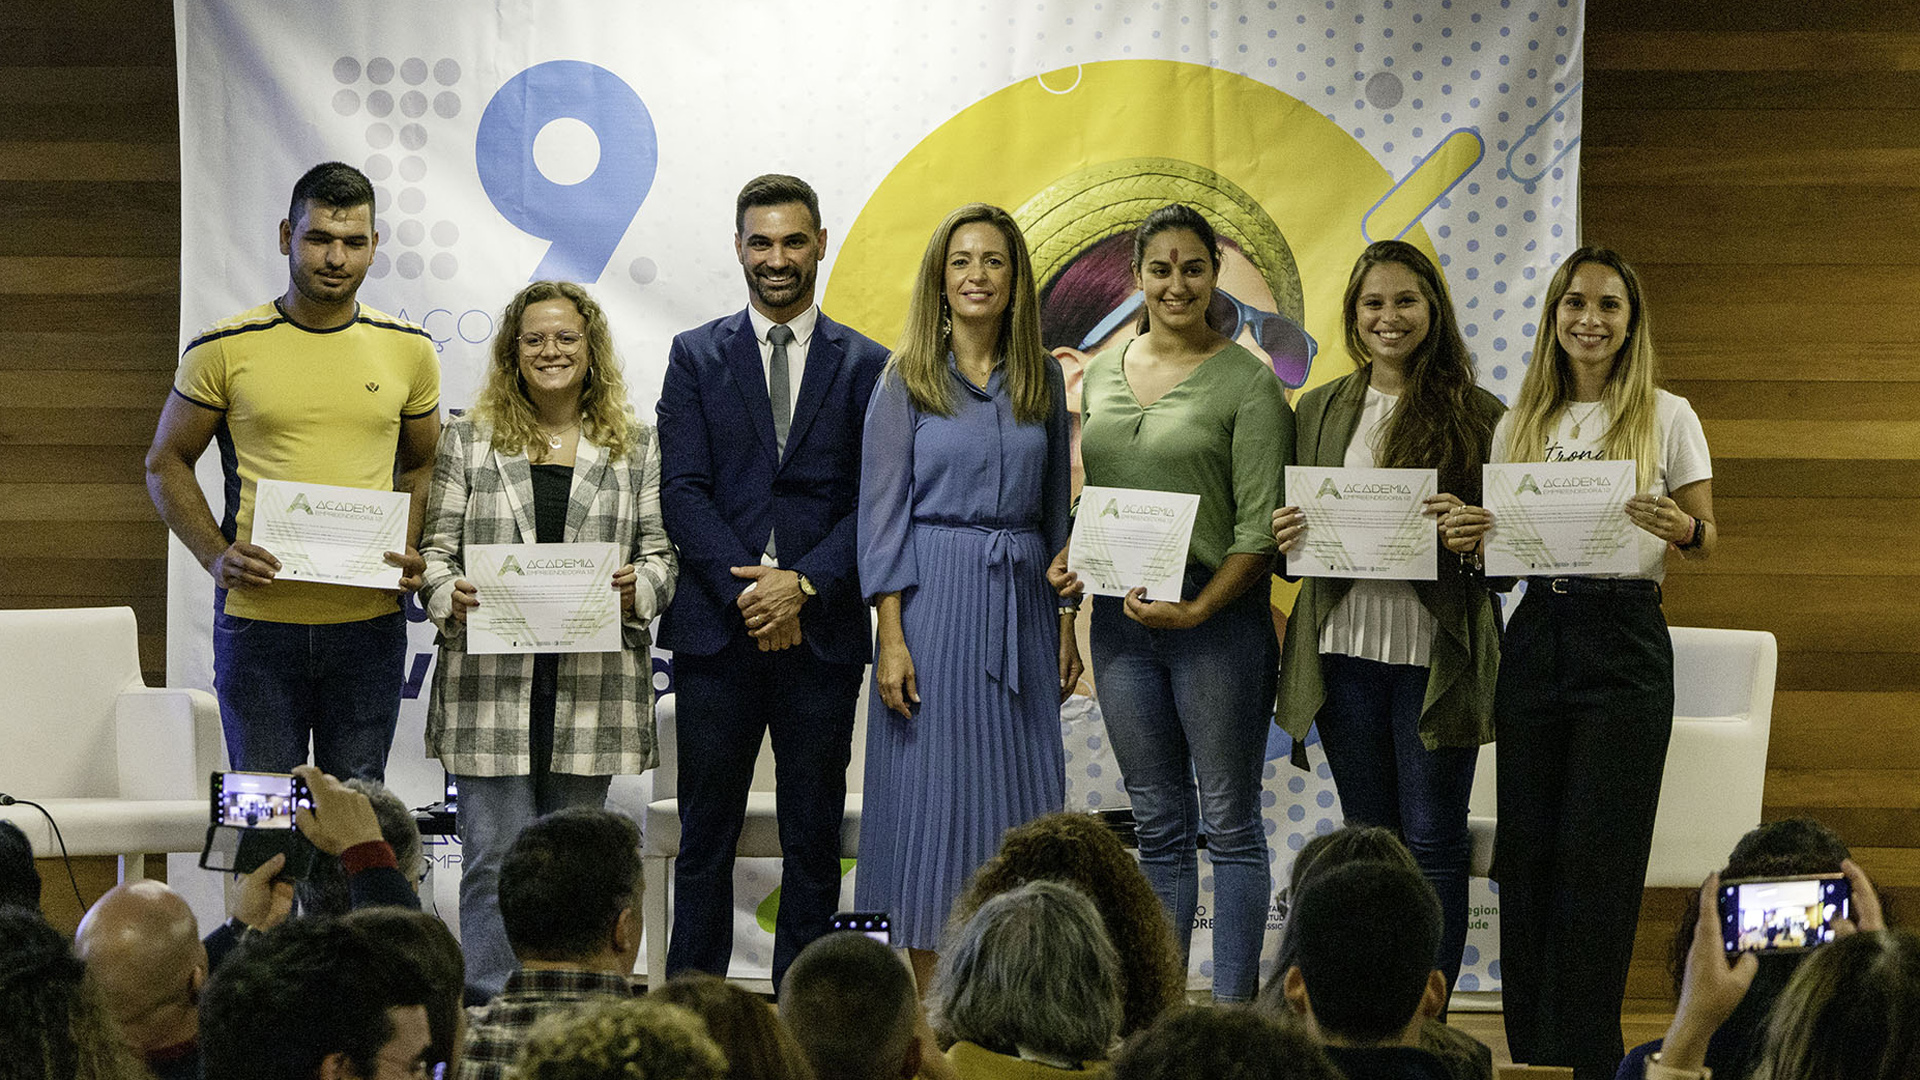 Academia Empreendedora promove “capacitação dos jovens para as competências do Século XXI”, afirma Maria João Carreiro